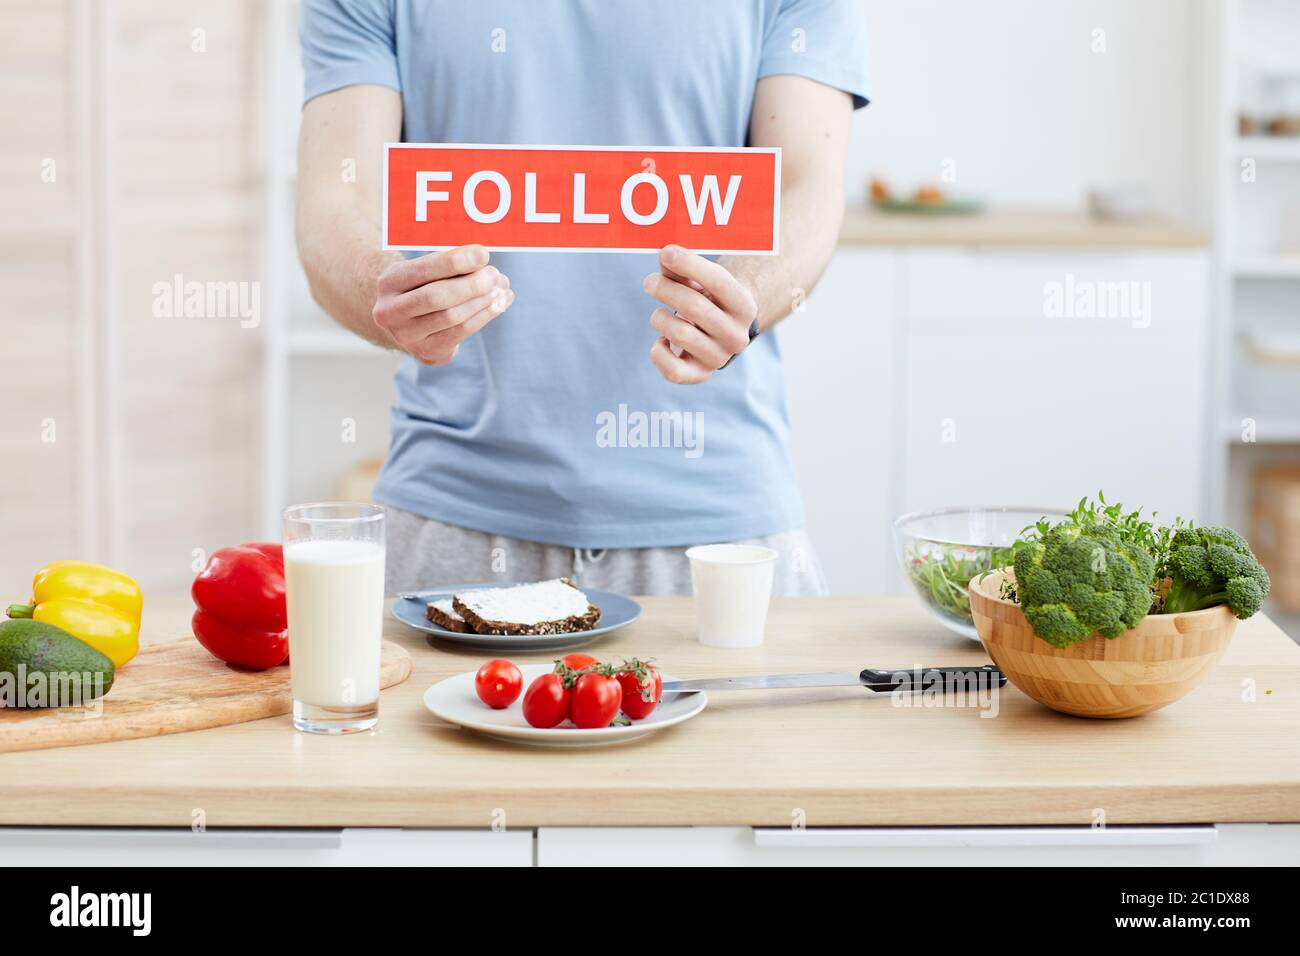 Primer plano de blogger sosteniendo la placa siga en sus manos que dirige el blog sobre la comida saludable Foto de stock